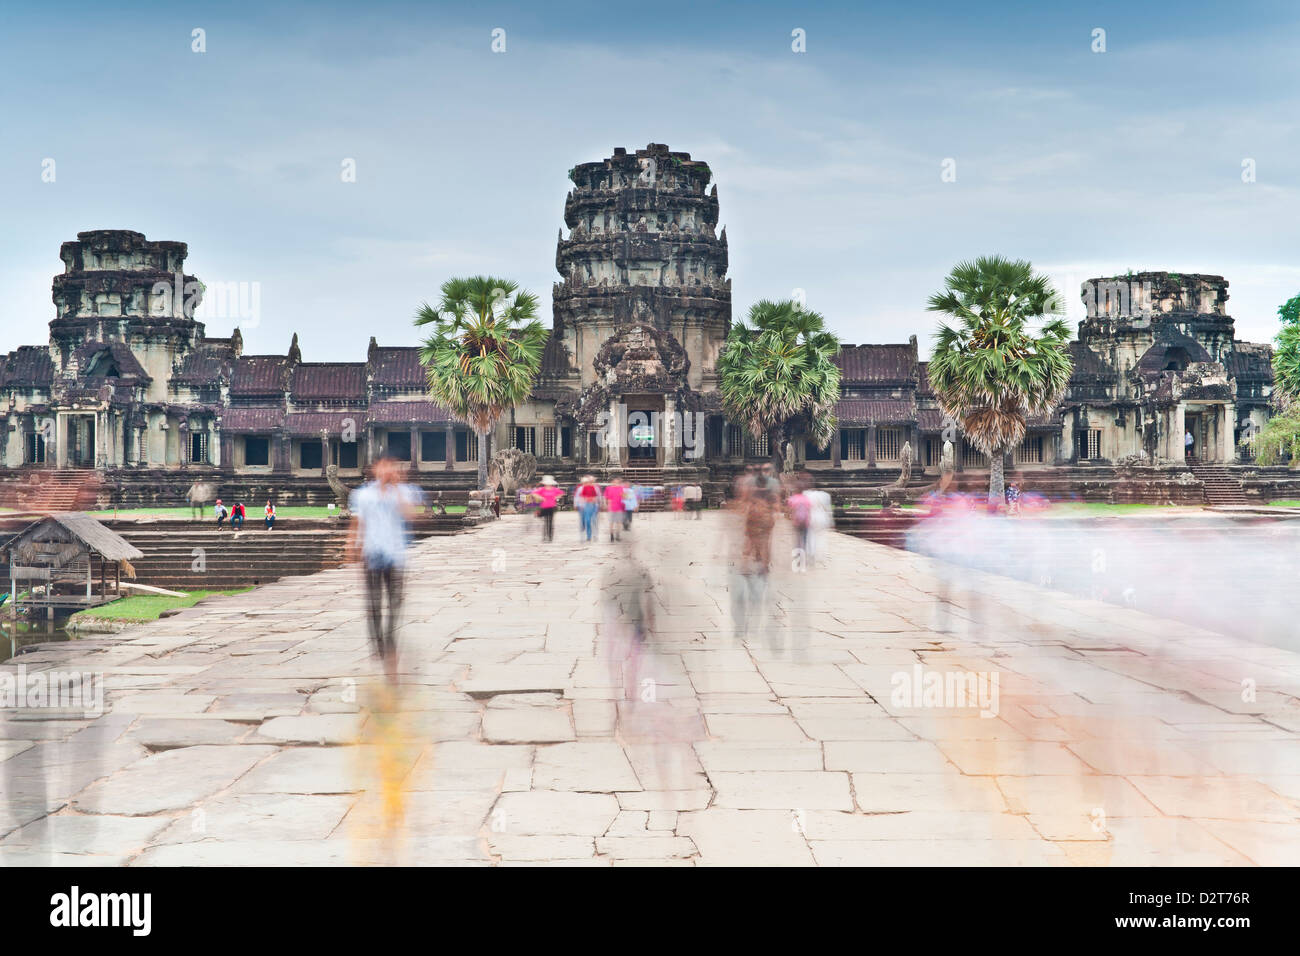 Complesso del tempio di Angkor Wat, Angkor, Sito Patrimonio Mondiale dell'UNESCO, Siem Reap, Cambogia, Indocina, Asia sud-orientale, Asia Foto Stock